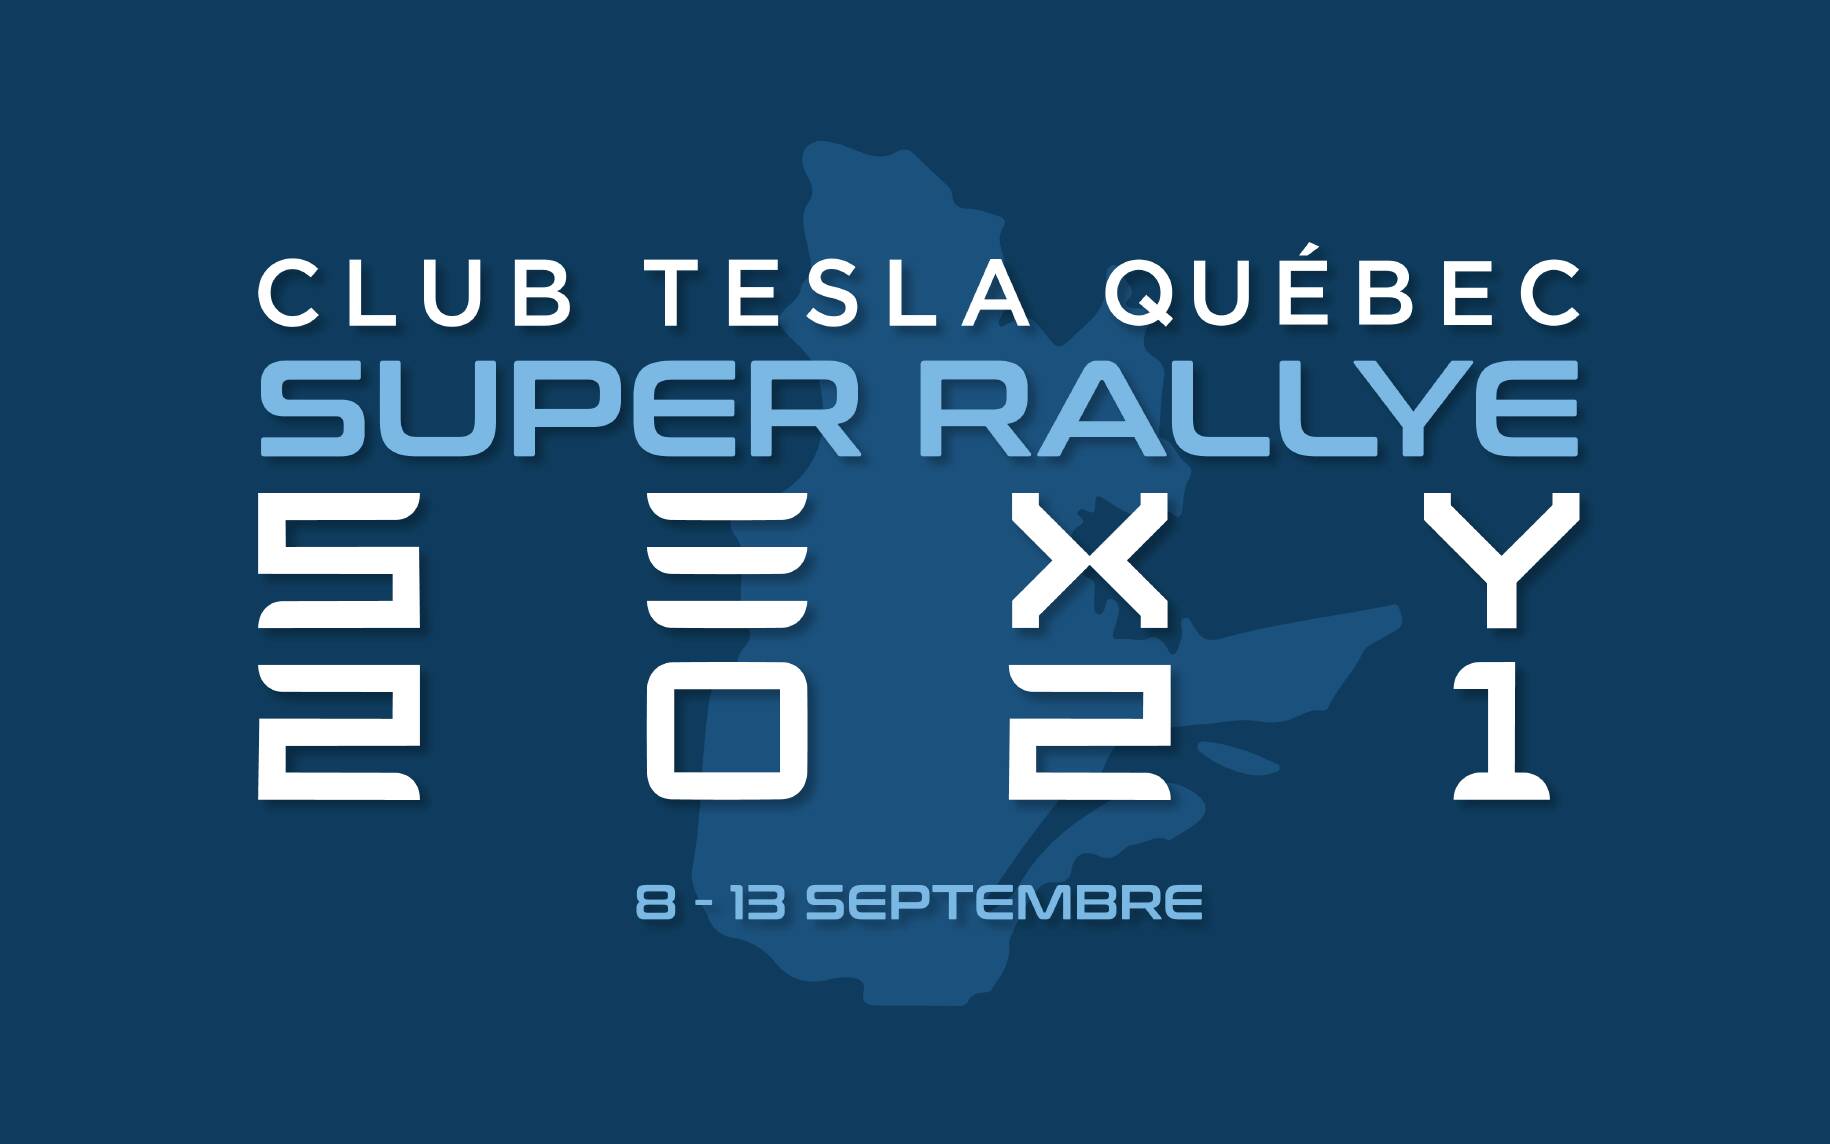 Le Club Tesla Québec organise un rallye de 3 300 km à travers la province -  Guide Auto